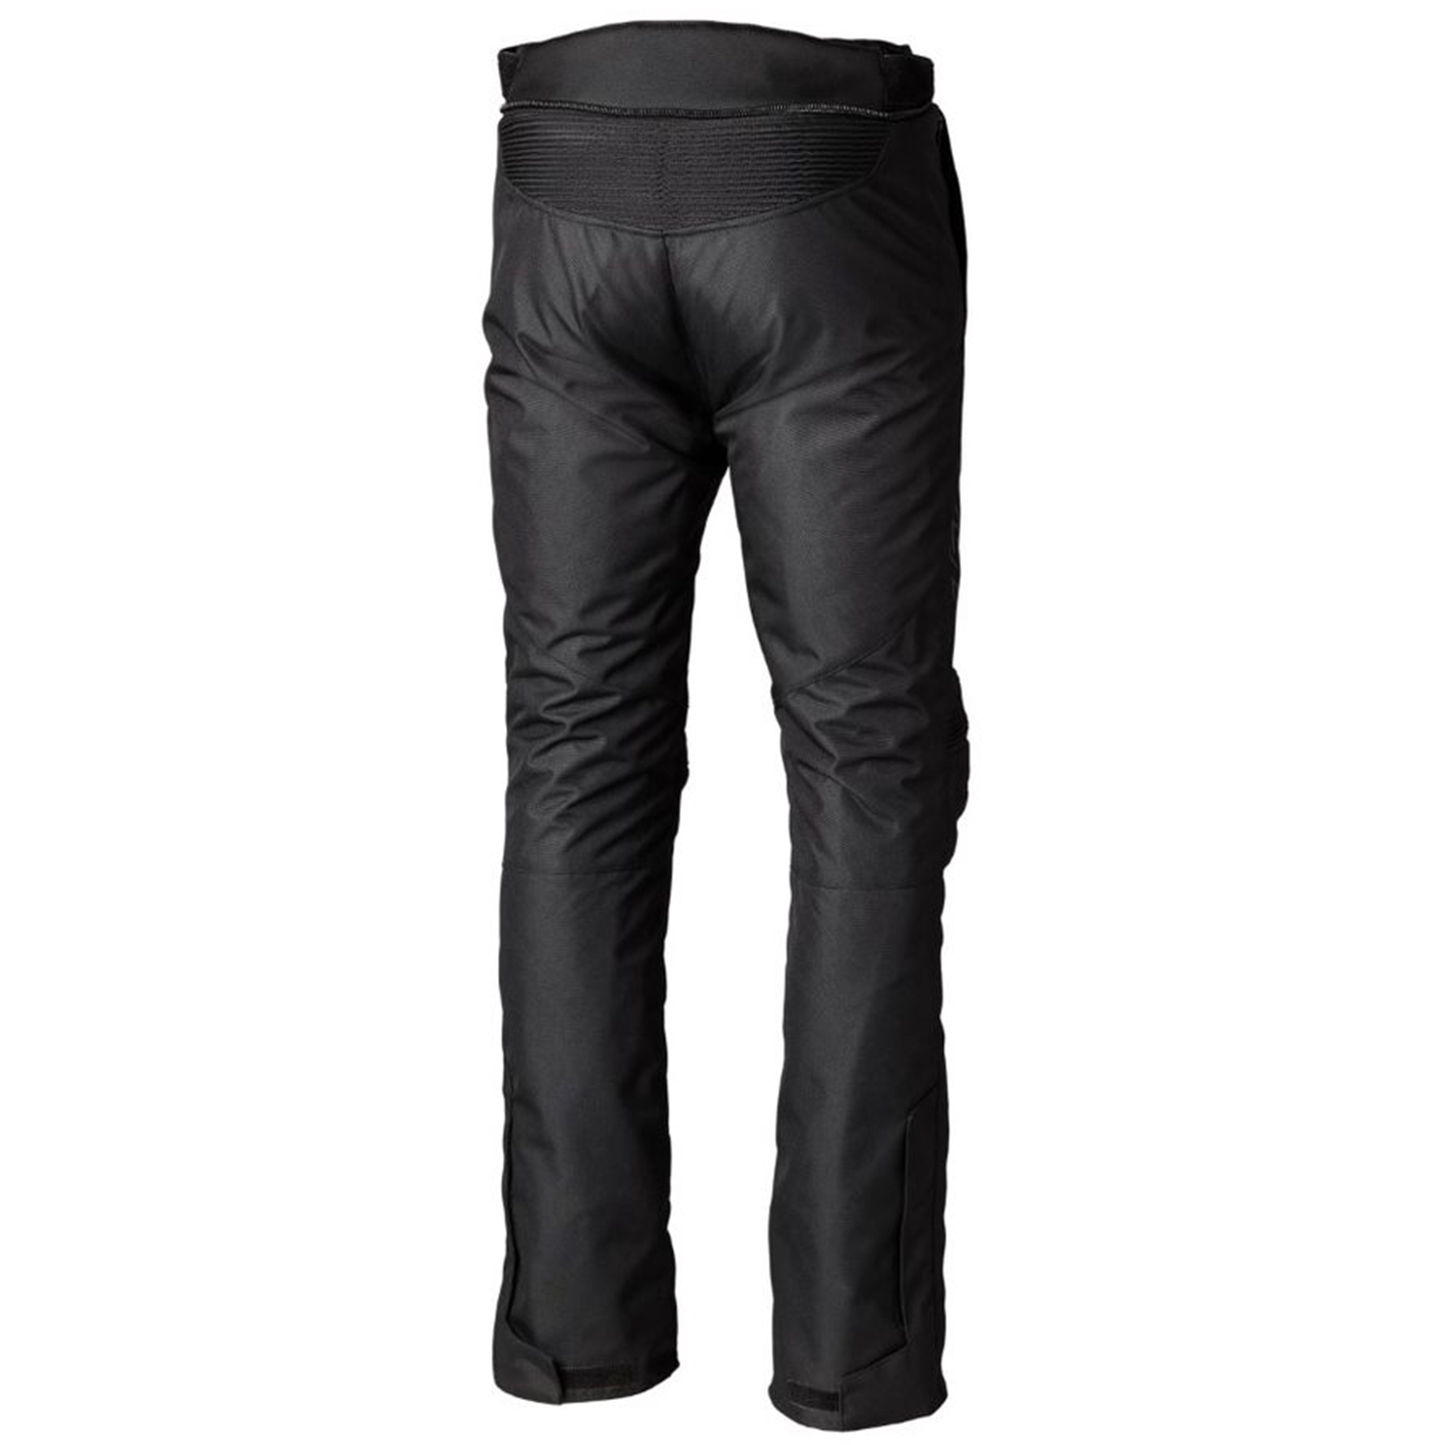 RST S1 (CE) Men's Textile Regular Jean - Black/Black